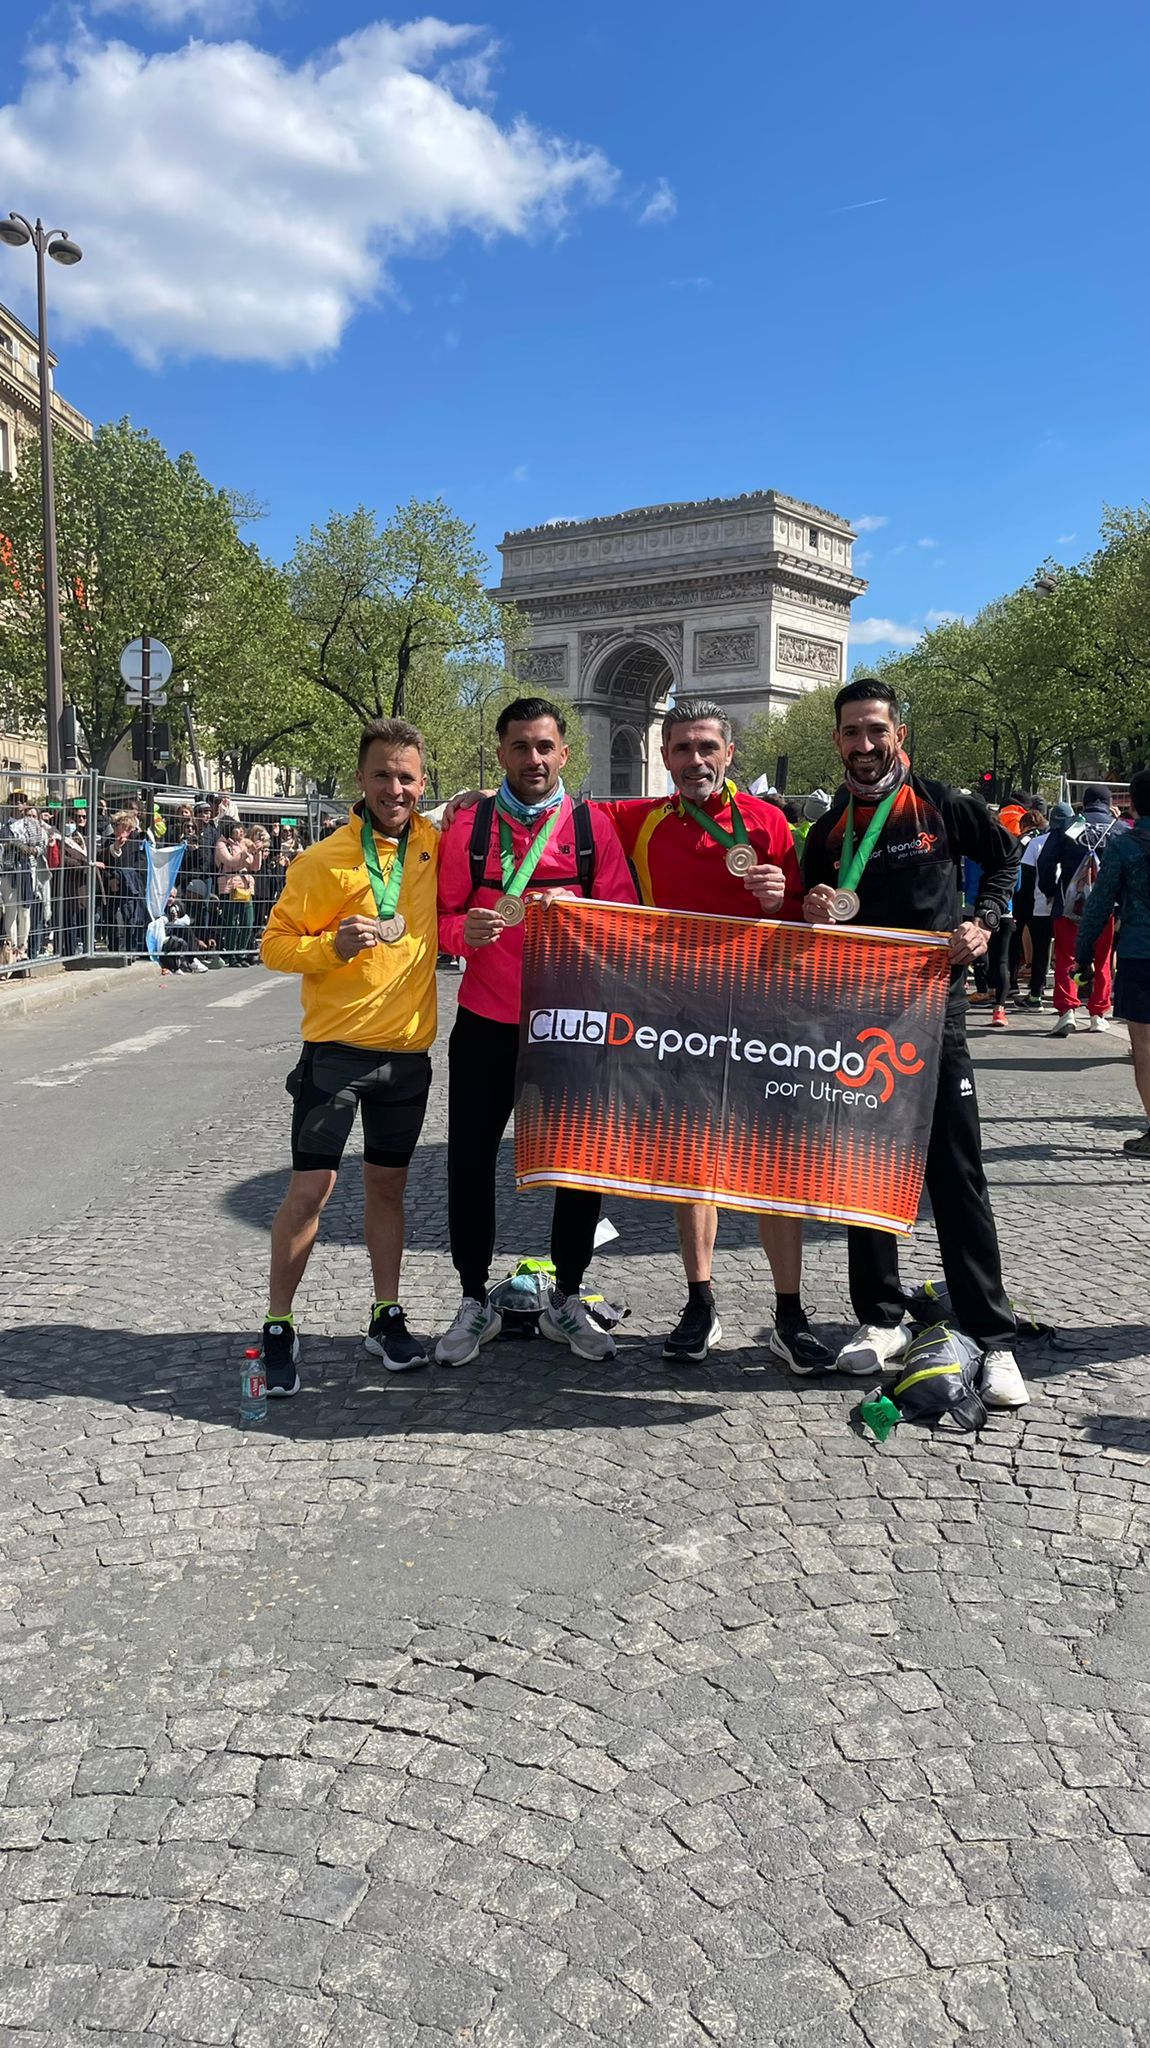 4 atletas utreranos del Club Deporteando presentes en la Maratón de París